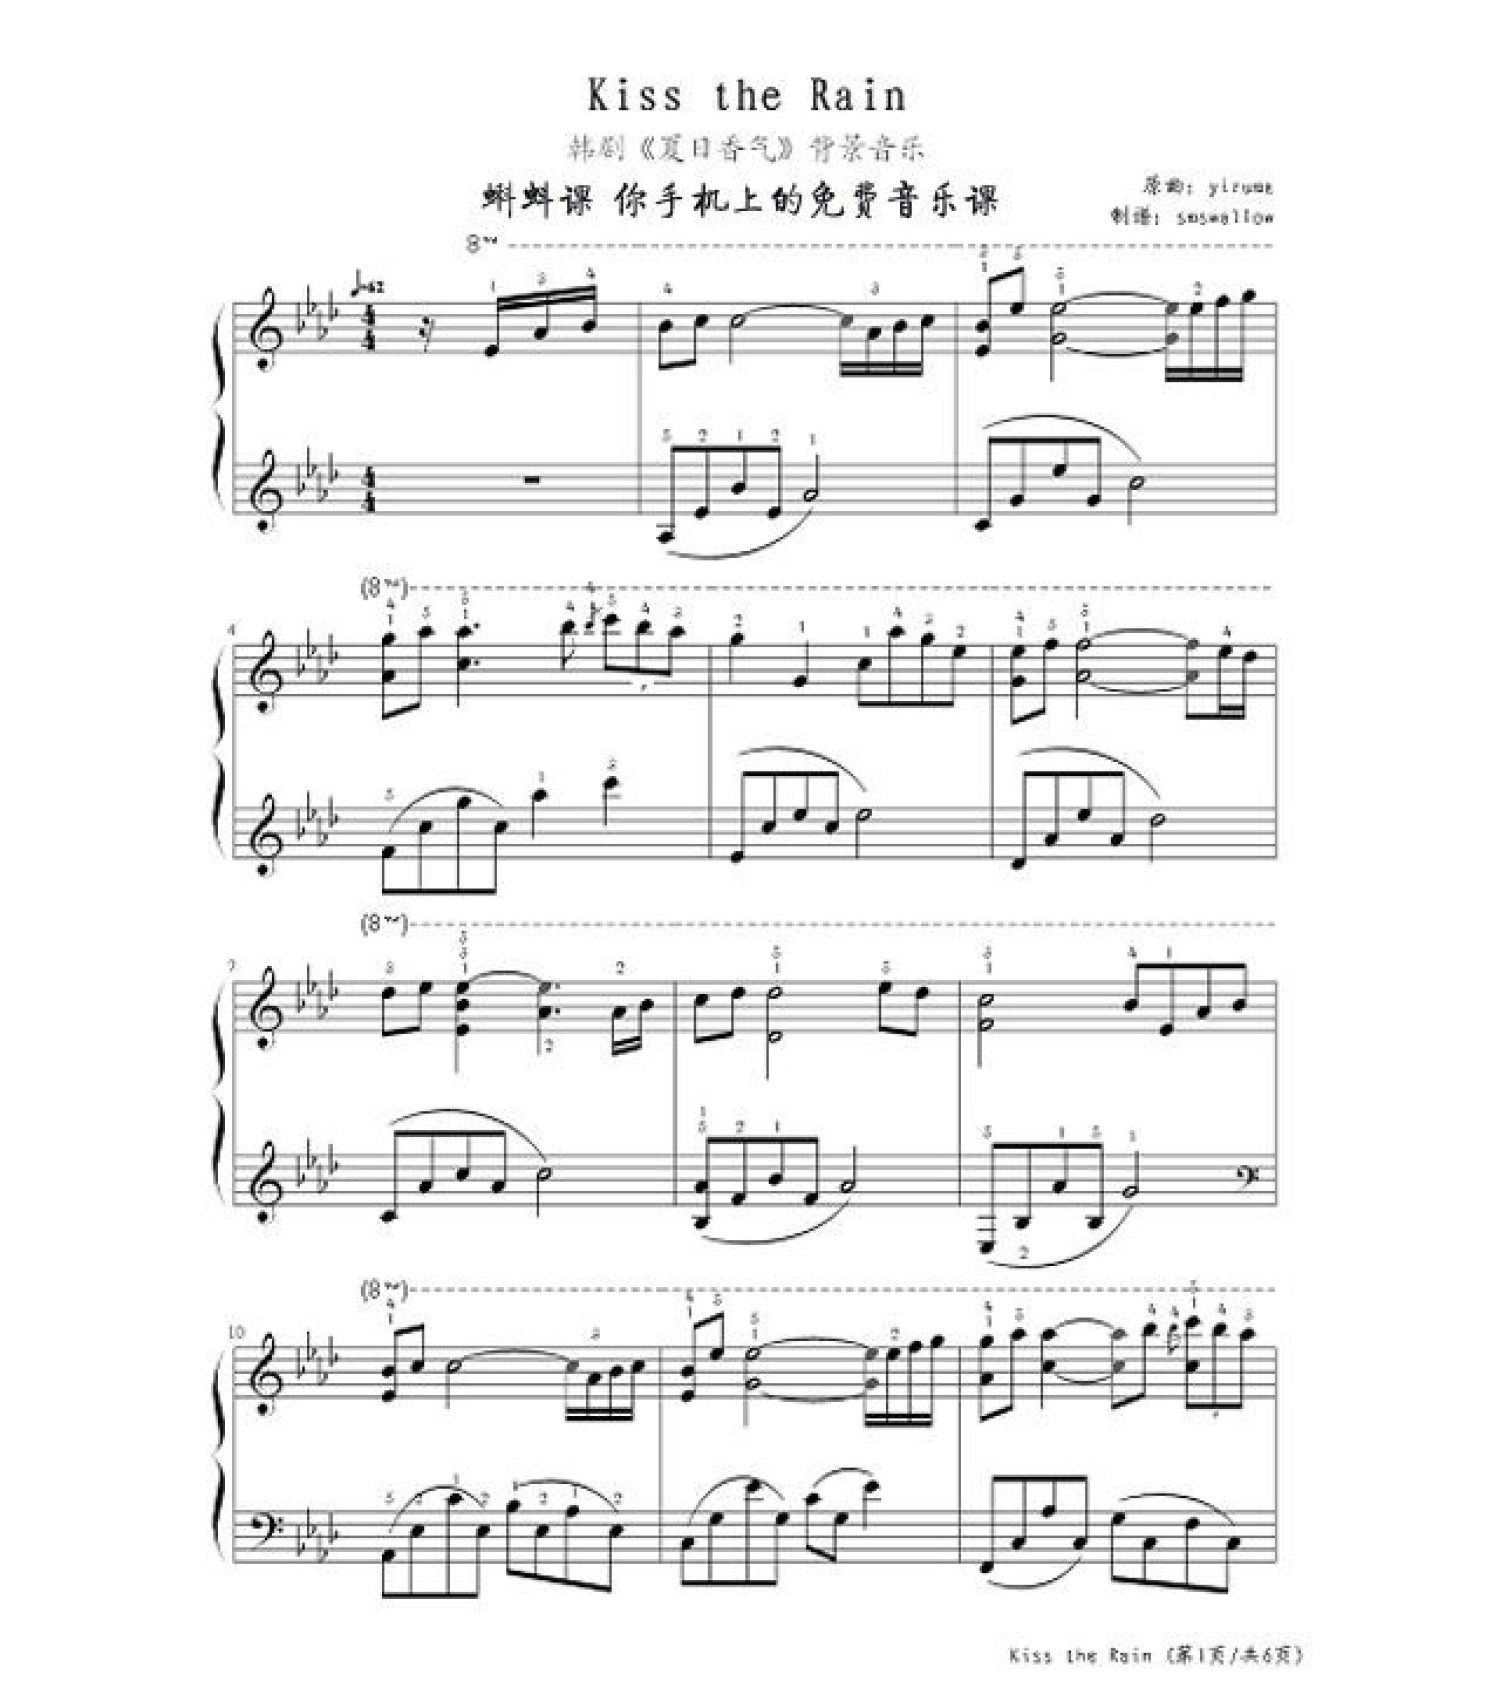 雨的印记钢琴曲下载 雨的印记纯音乐mp3下载_华夏智能网